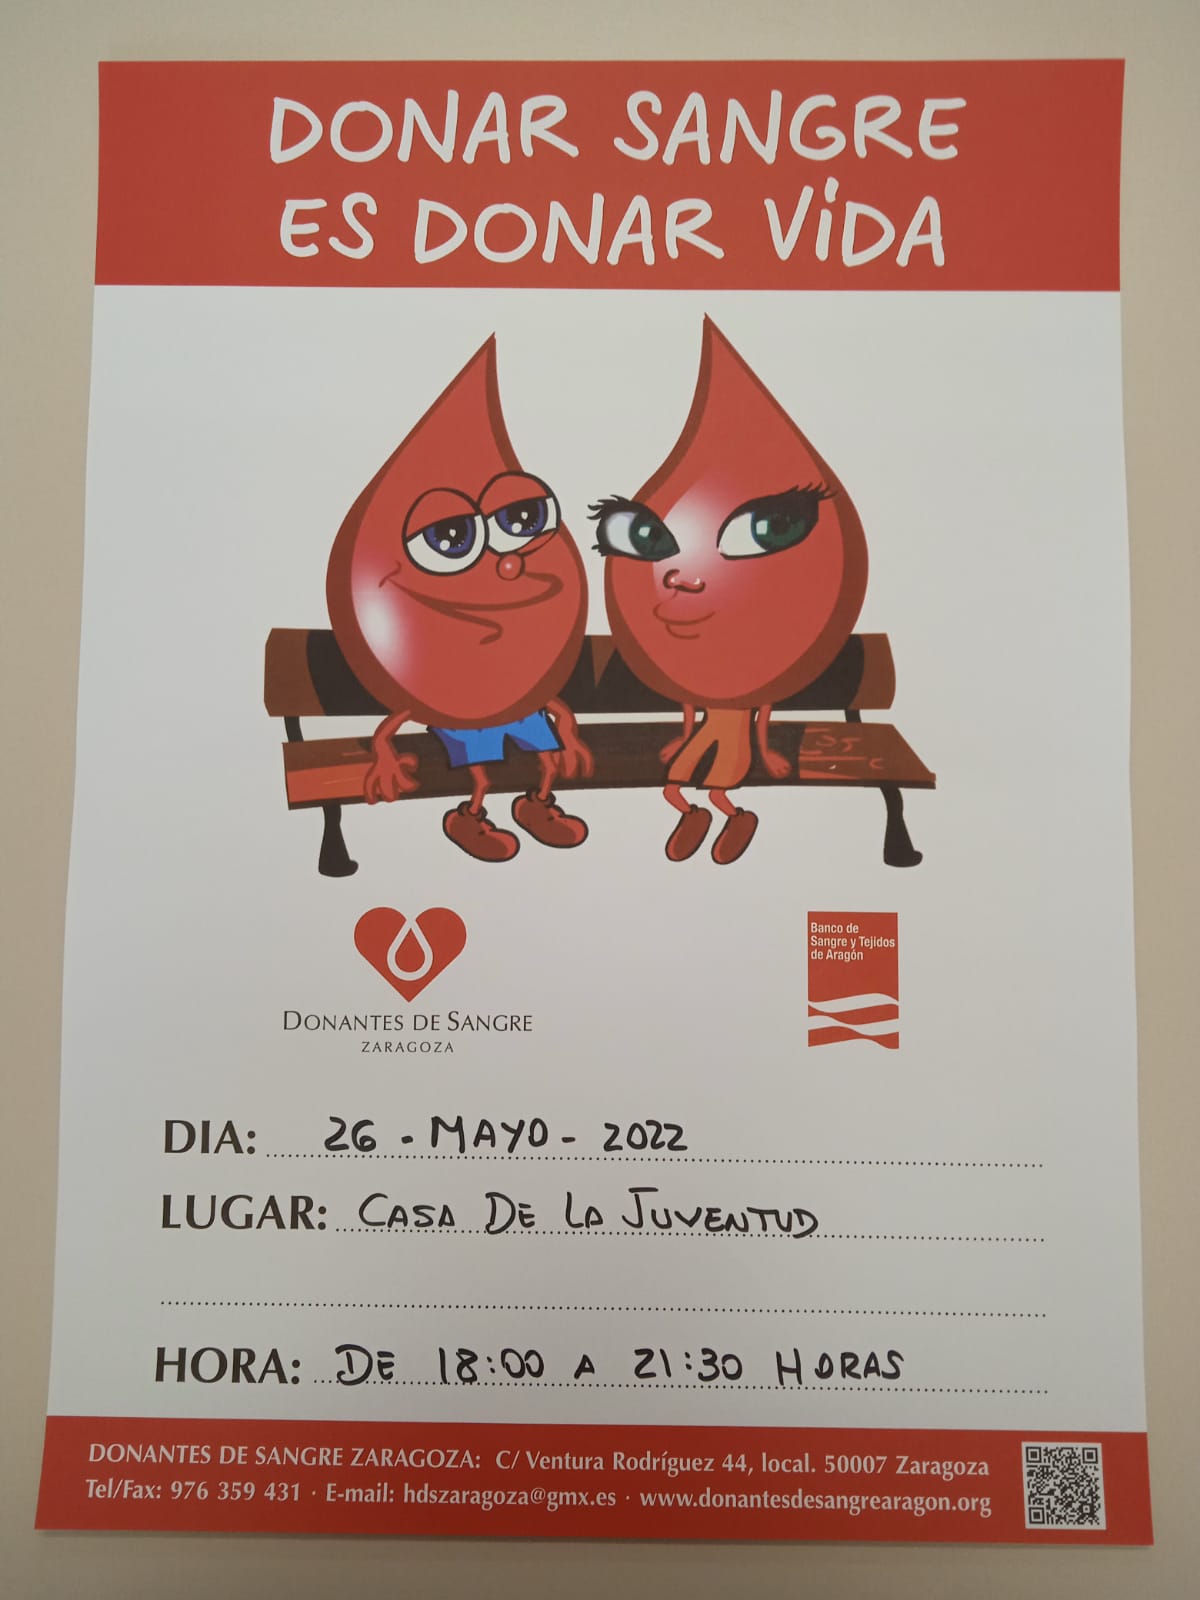 Donar Sangre es Donar Vida